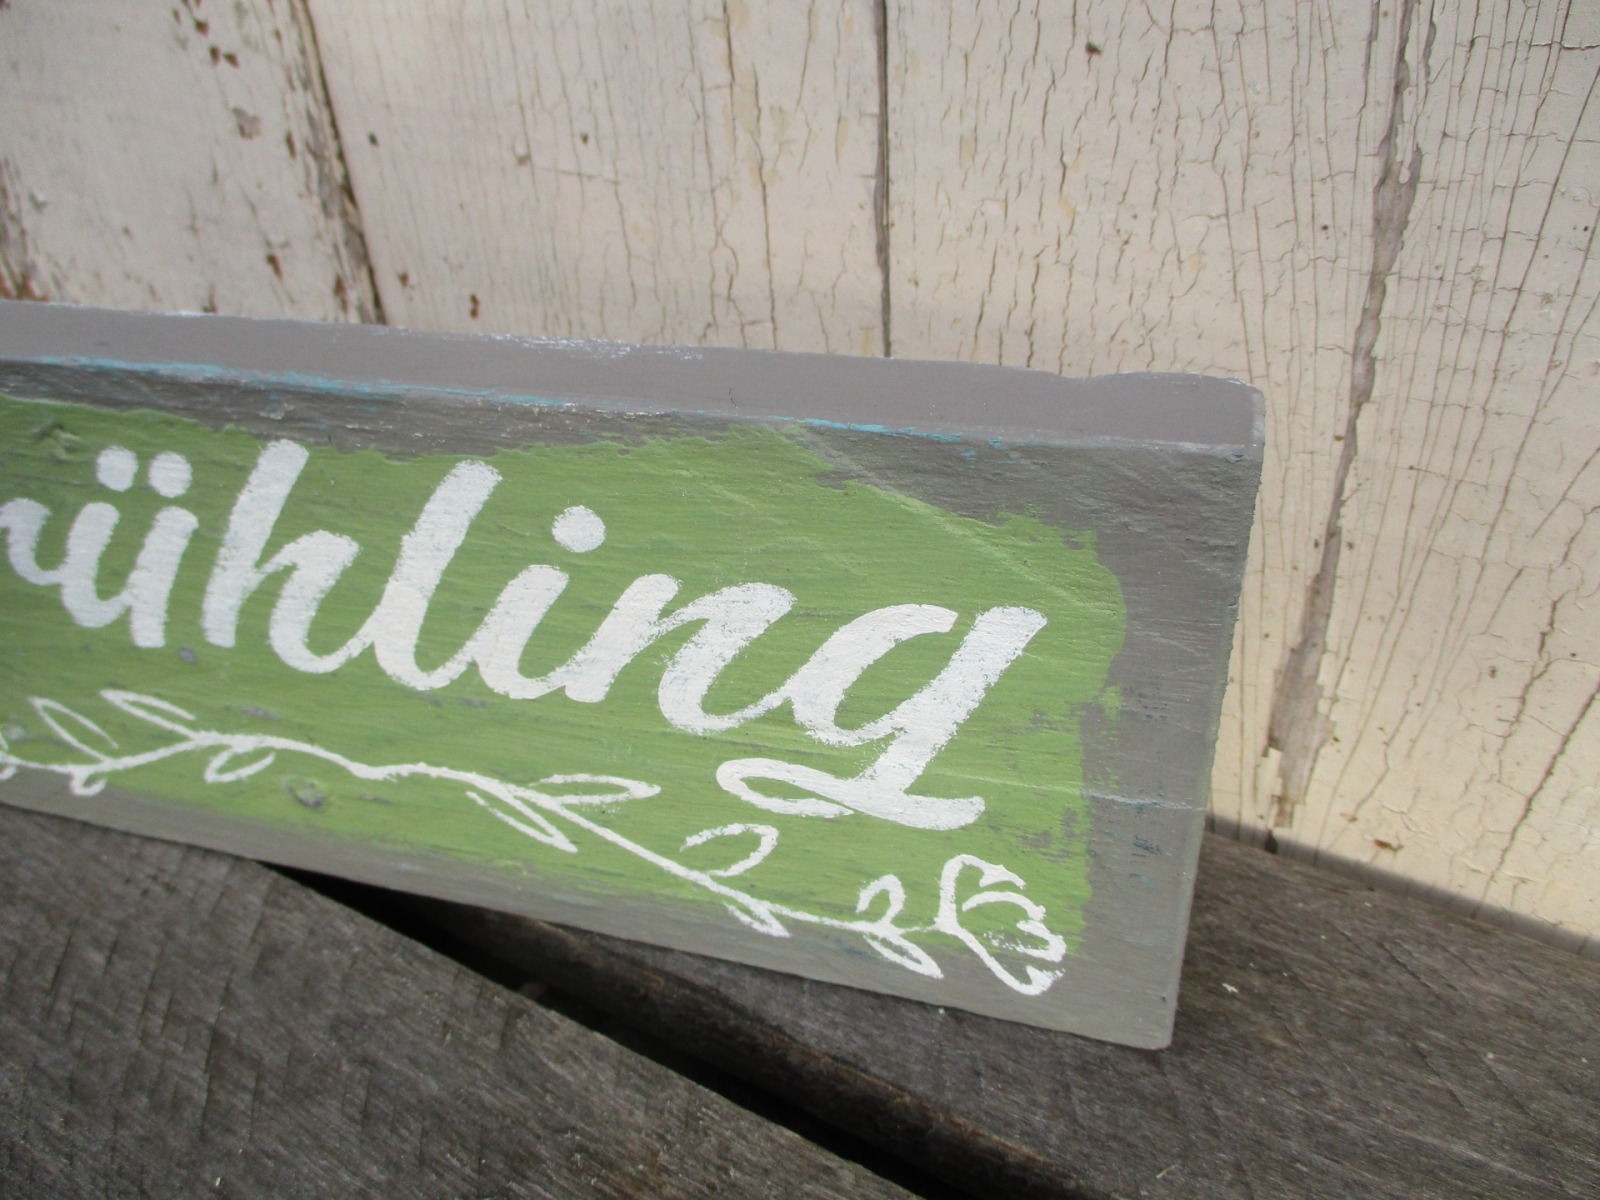 Frühjahrs Deko Schild Frühling für innen &amp; außen - aus recyceltem Altholz im rustikalem Landhaus